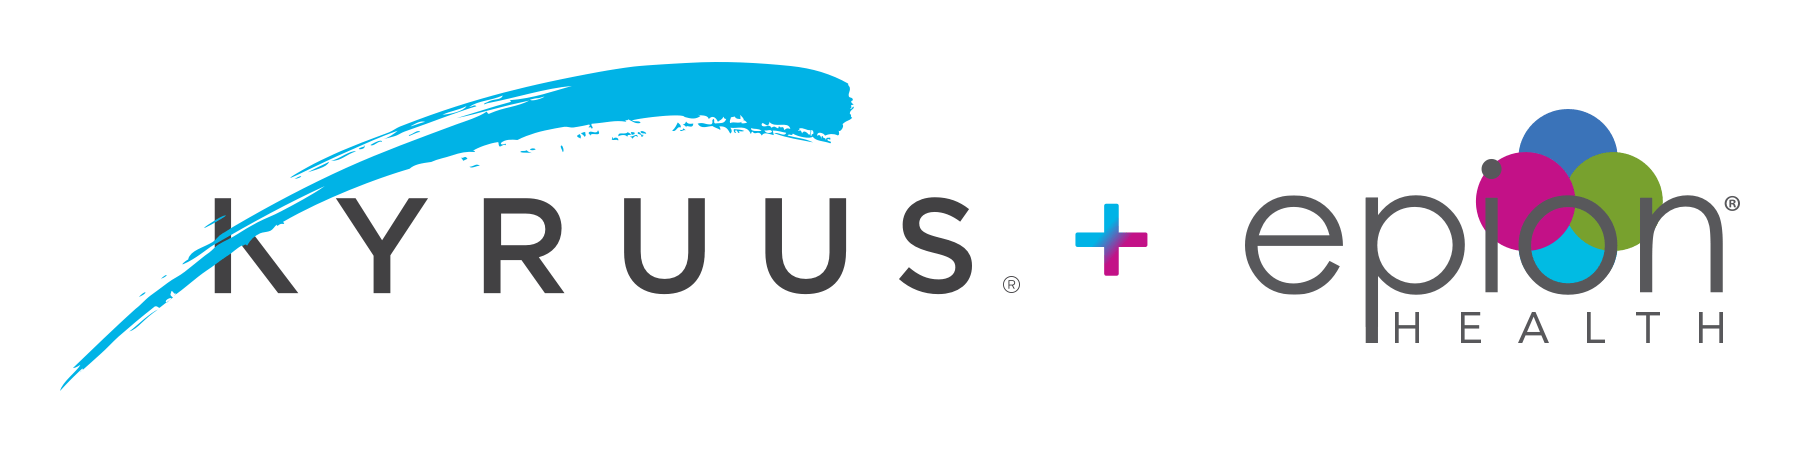 Kyruus Announces Acquisition of Leading Digital Patient Engagement Company, Epion Health